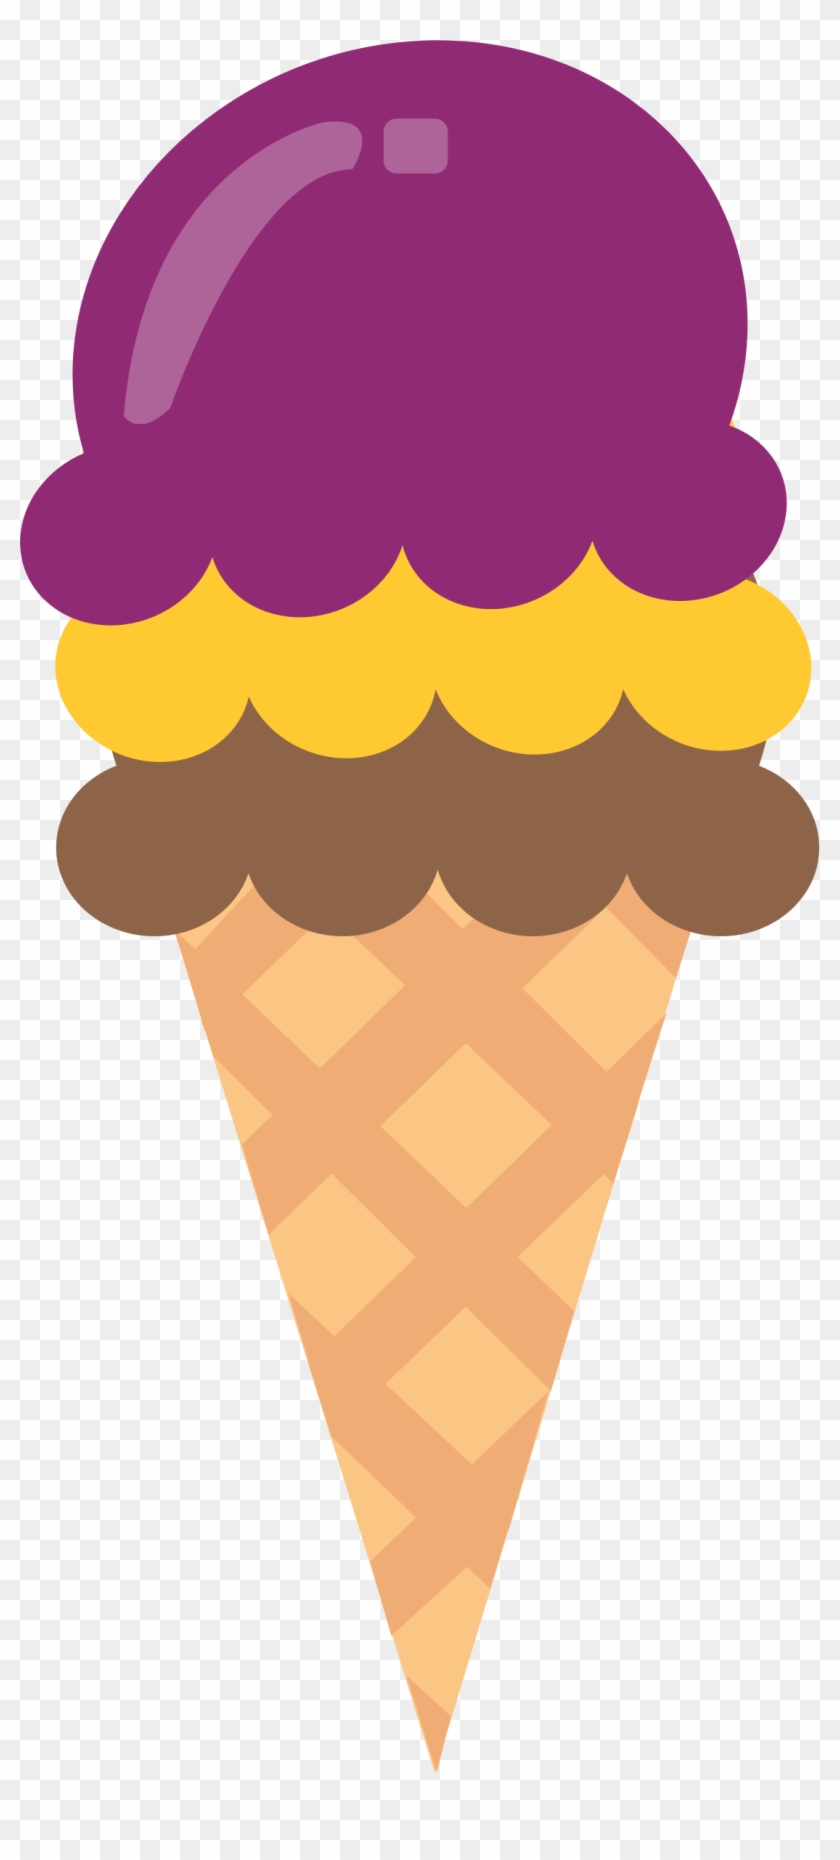 Big Image - Ice Cream Cone Clip Art Large #547518